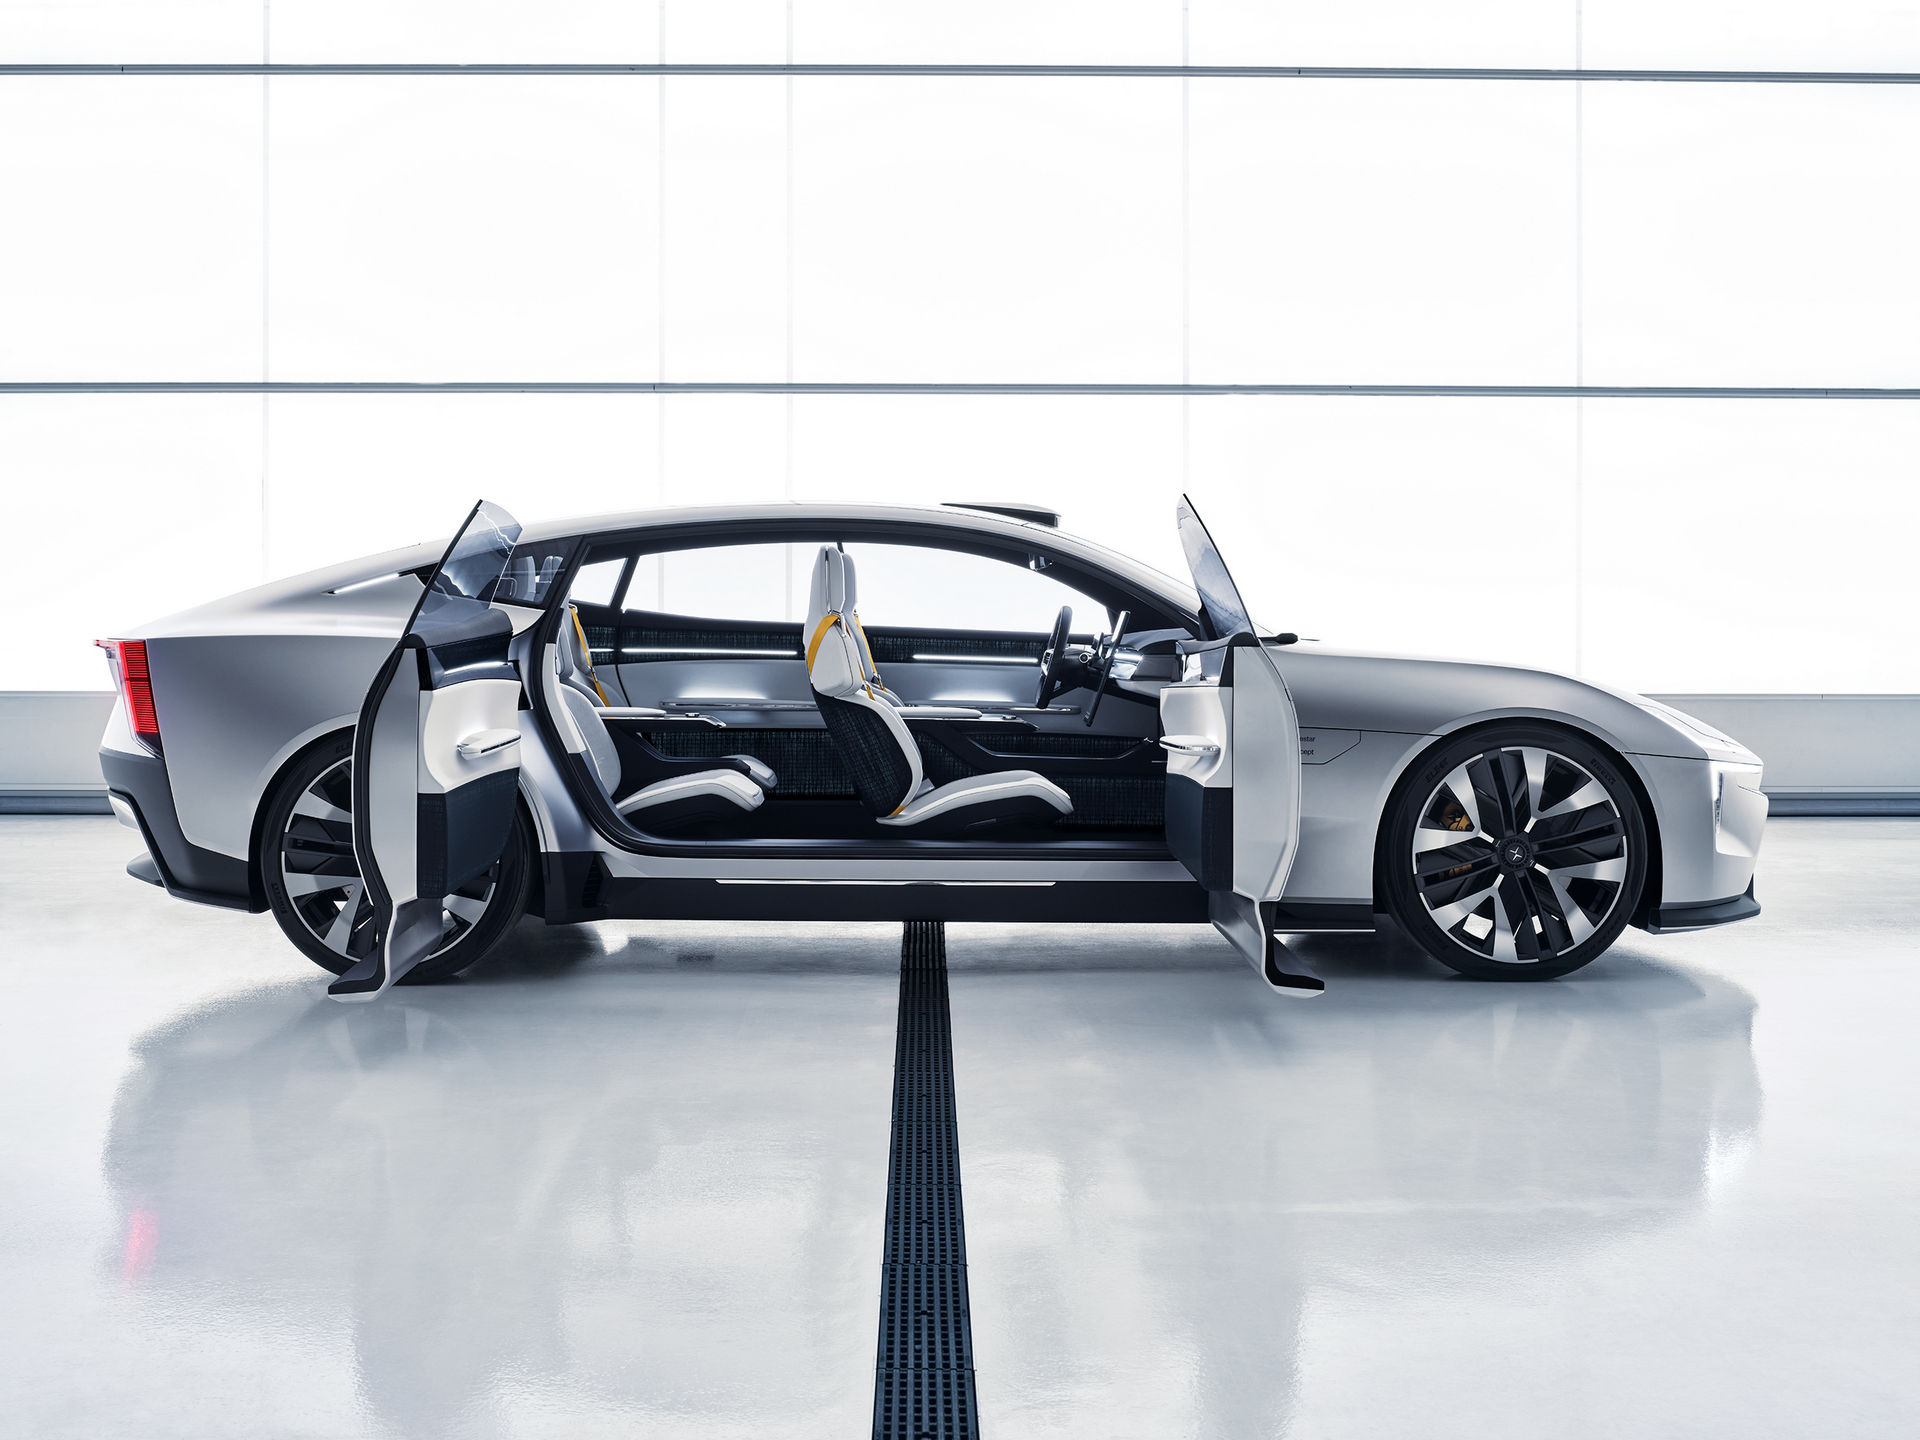 SUV siêu mạnh mới của Volvo: Thiết kế đậm chất tương lai, mượt như coupe - Ảnh 1.